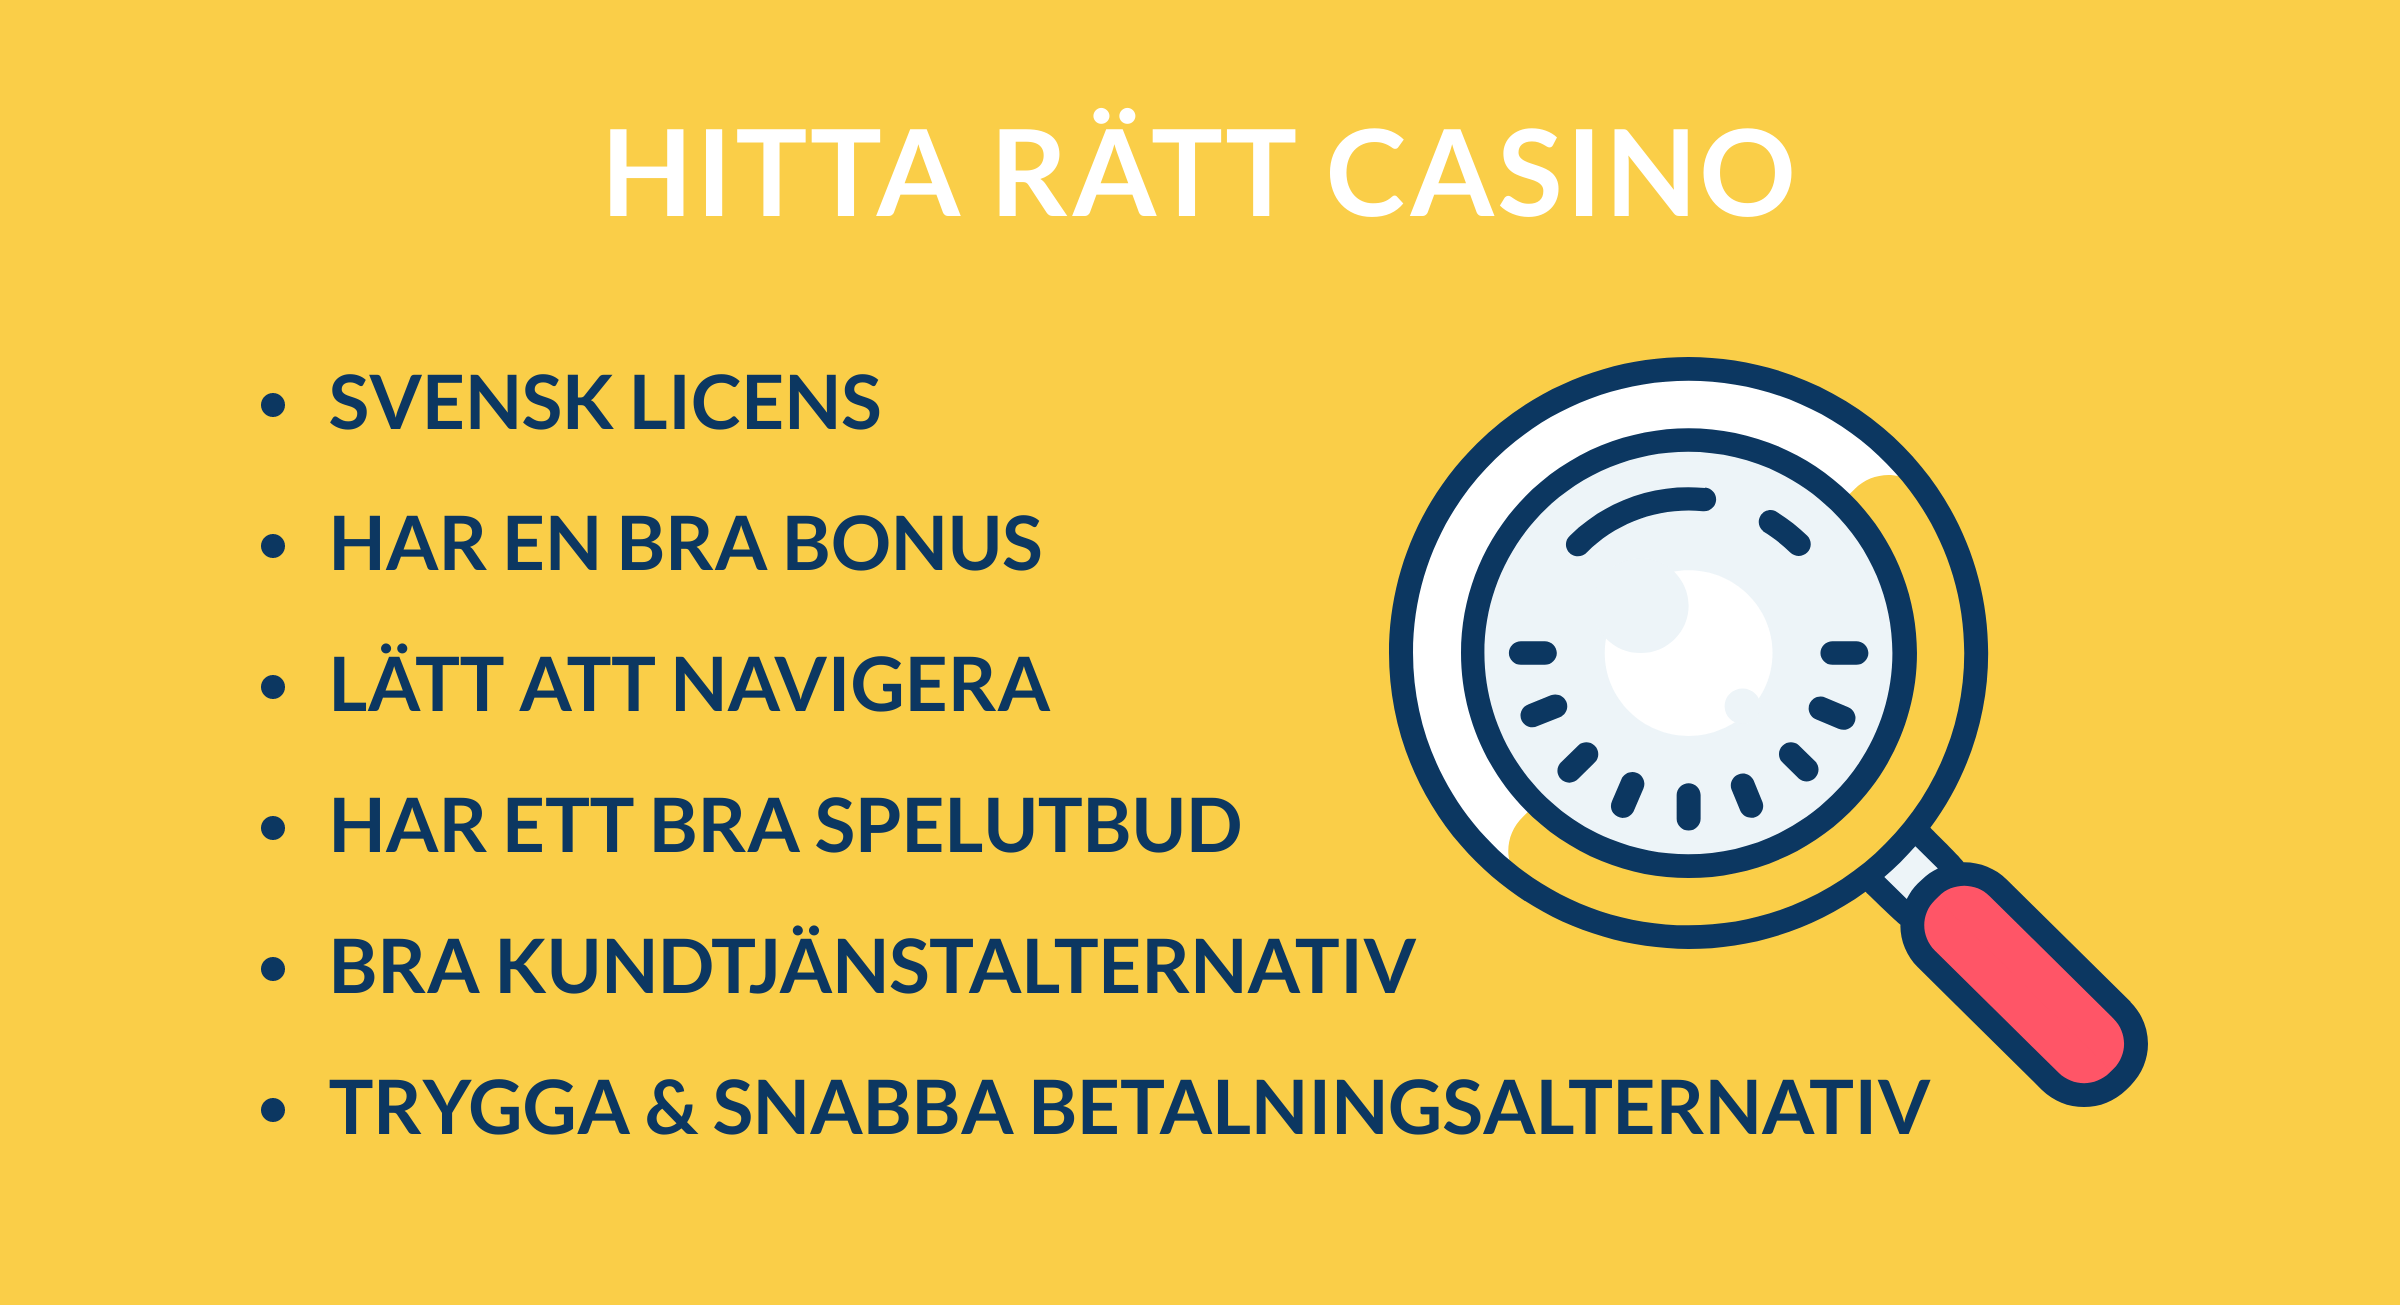 hitta rätt casino online for dig casivo se